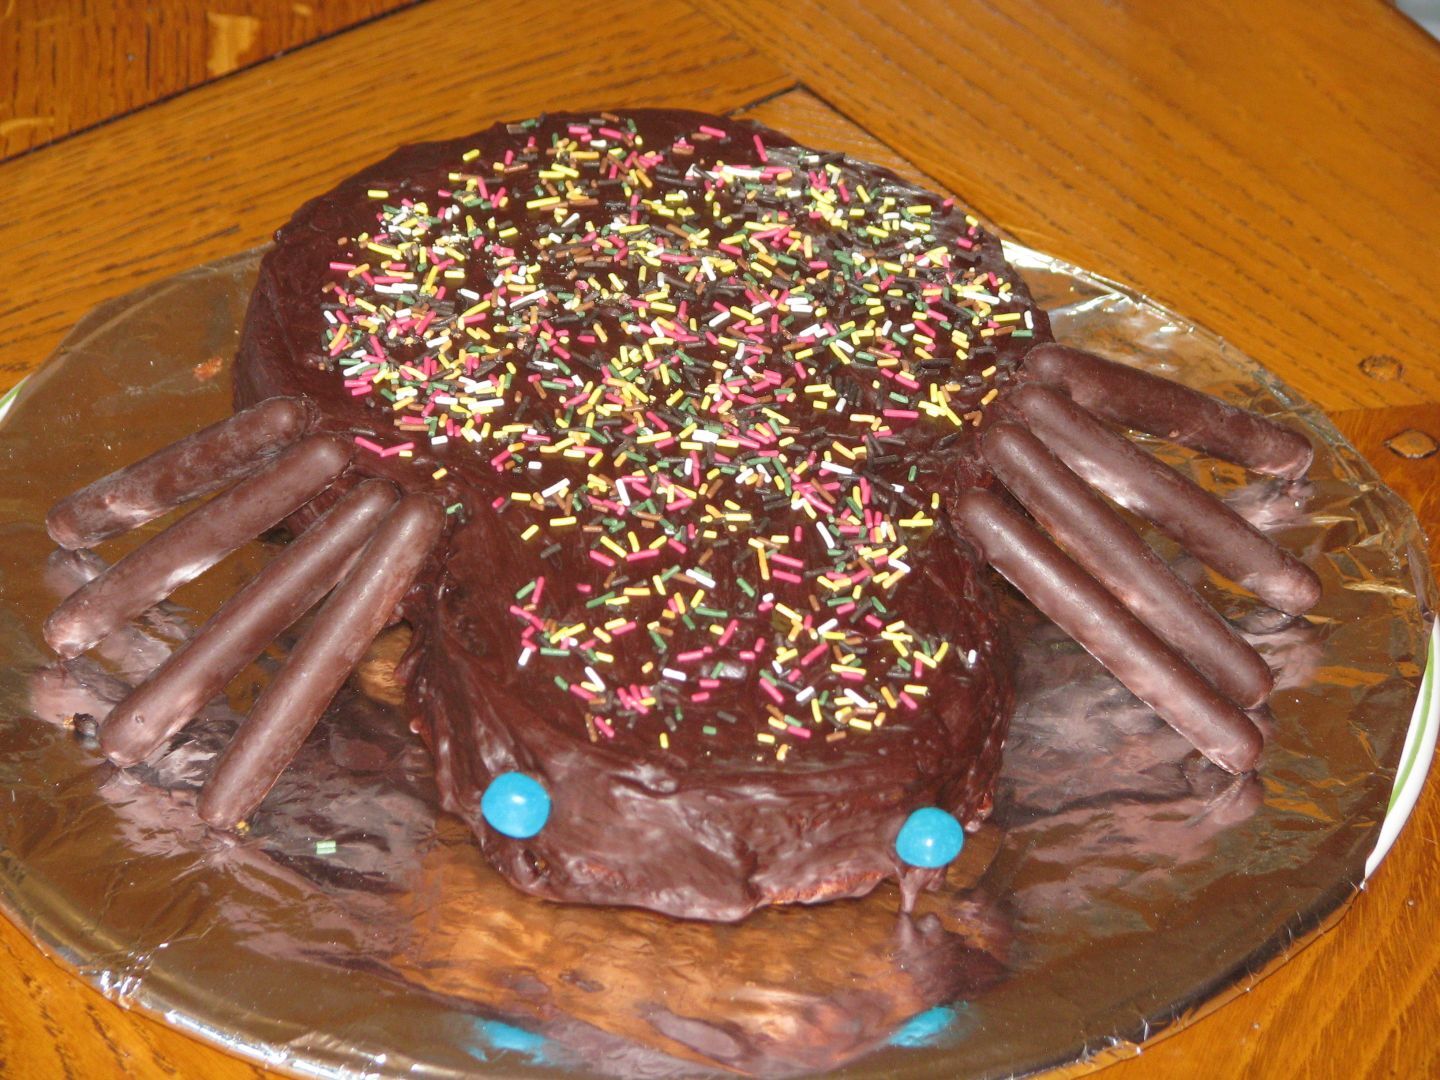 Gâteau aux araignées : Recette de Gâteau aux araignées